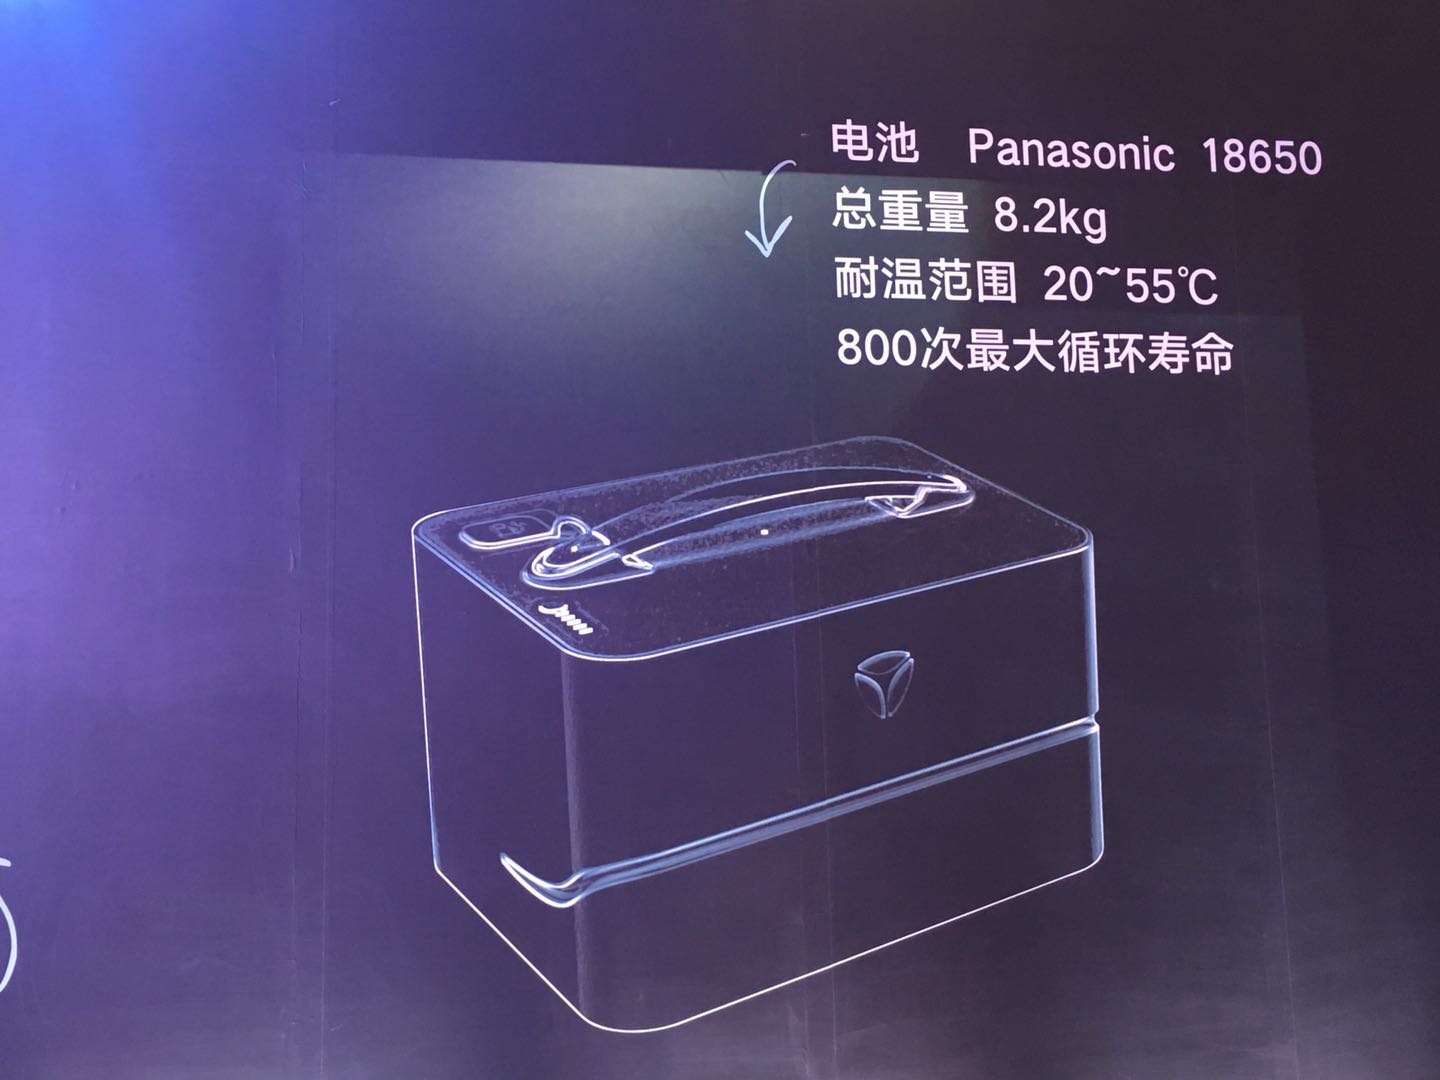 搭载特斯拉同款三元锂电池 雅迪g5电动车发布